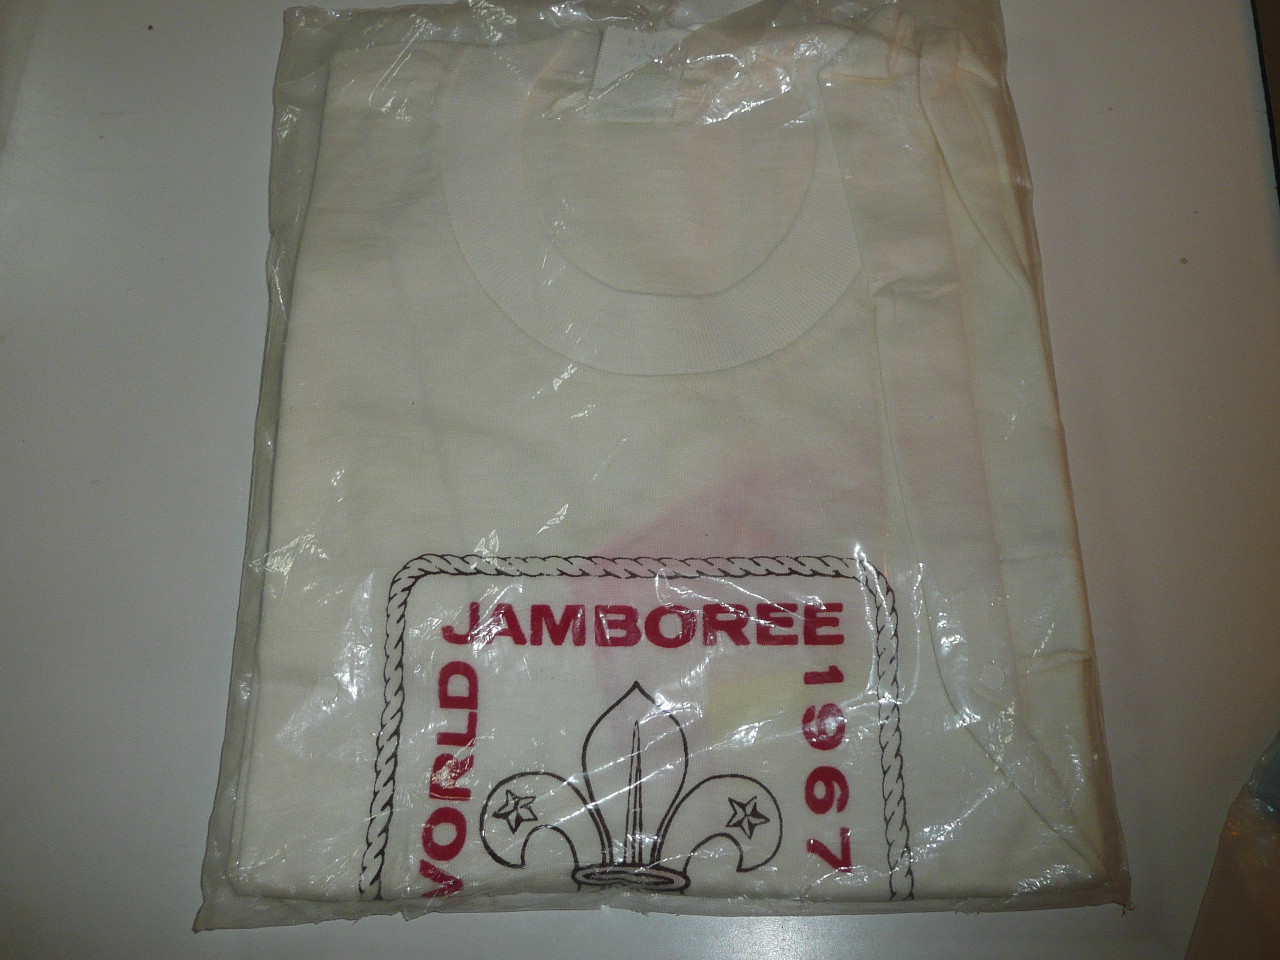 1967 Boy Scout World Jamboree Tee Shirt, Men's Large, New in Bag